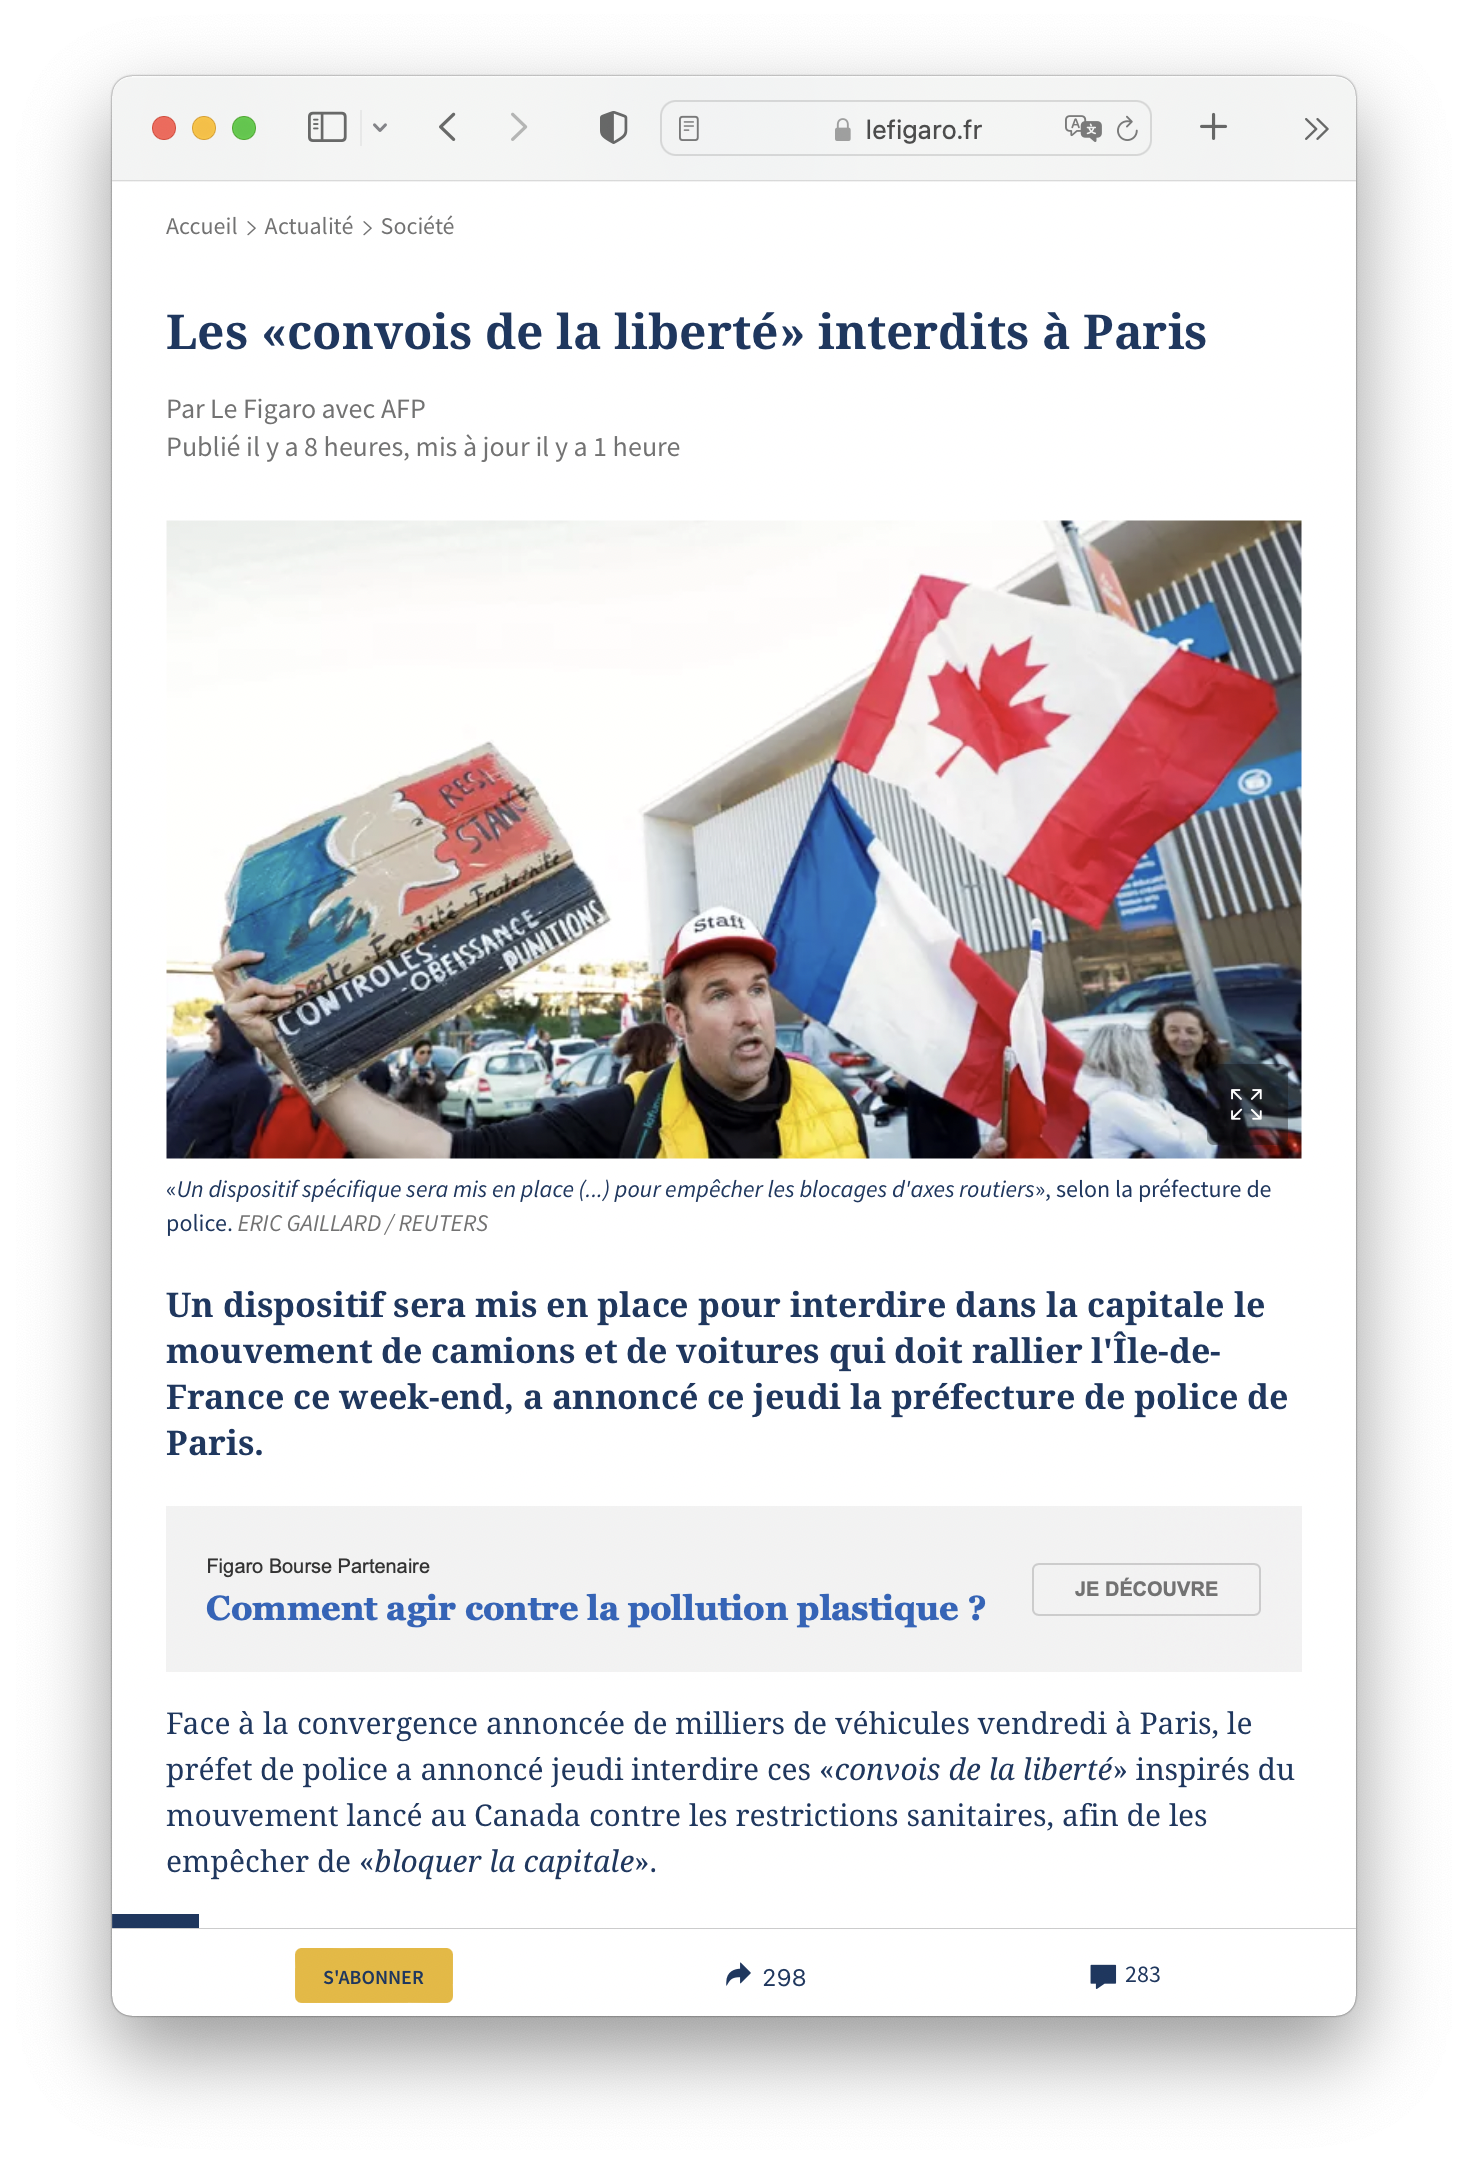 A browser window displaying the article Les convois de la liberté interdits à Paris on lefigaro.fr. The website uses both sans-serif as serif fonts